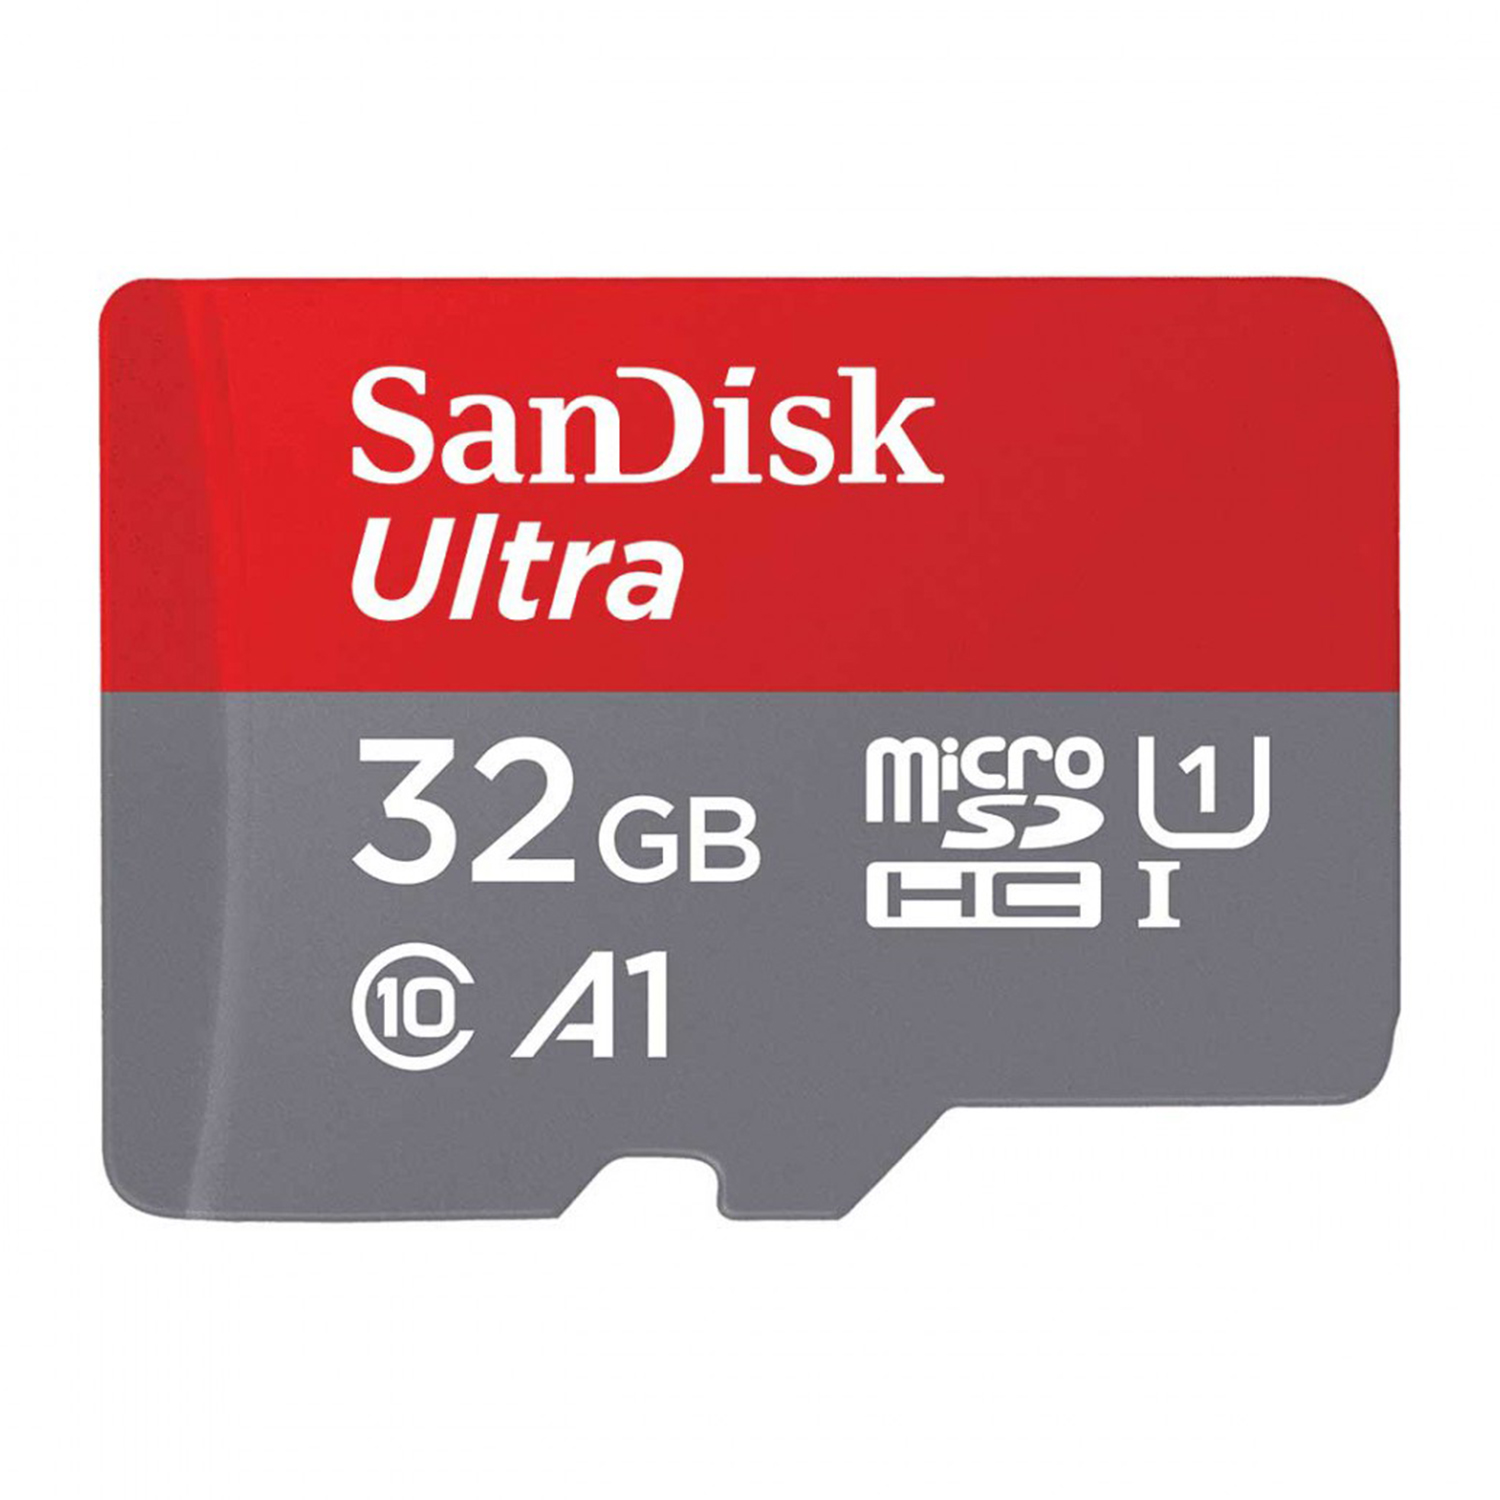  کارت حافظه microSDHC سن دیسک مدل A1 کلاس 10 استاندارد UHS-I U1 سرعت 98MBps ظرفیت 32 گیگابایت